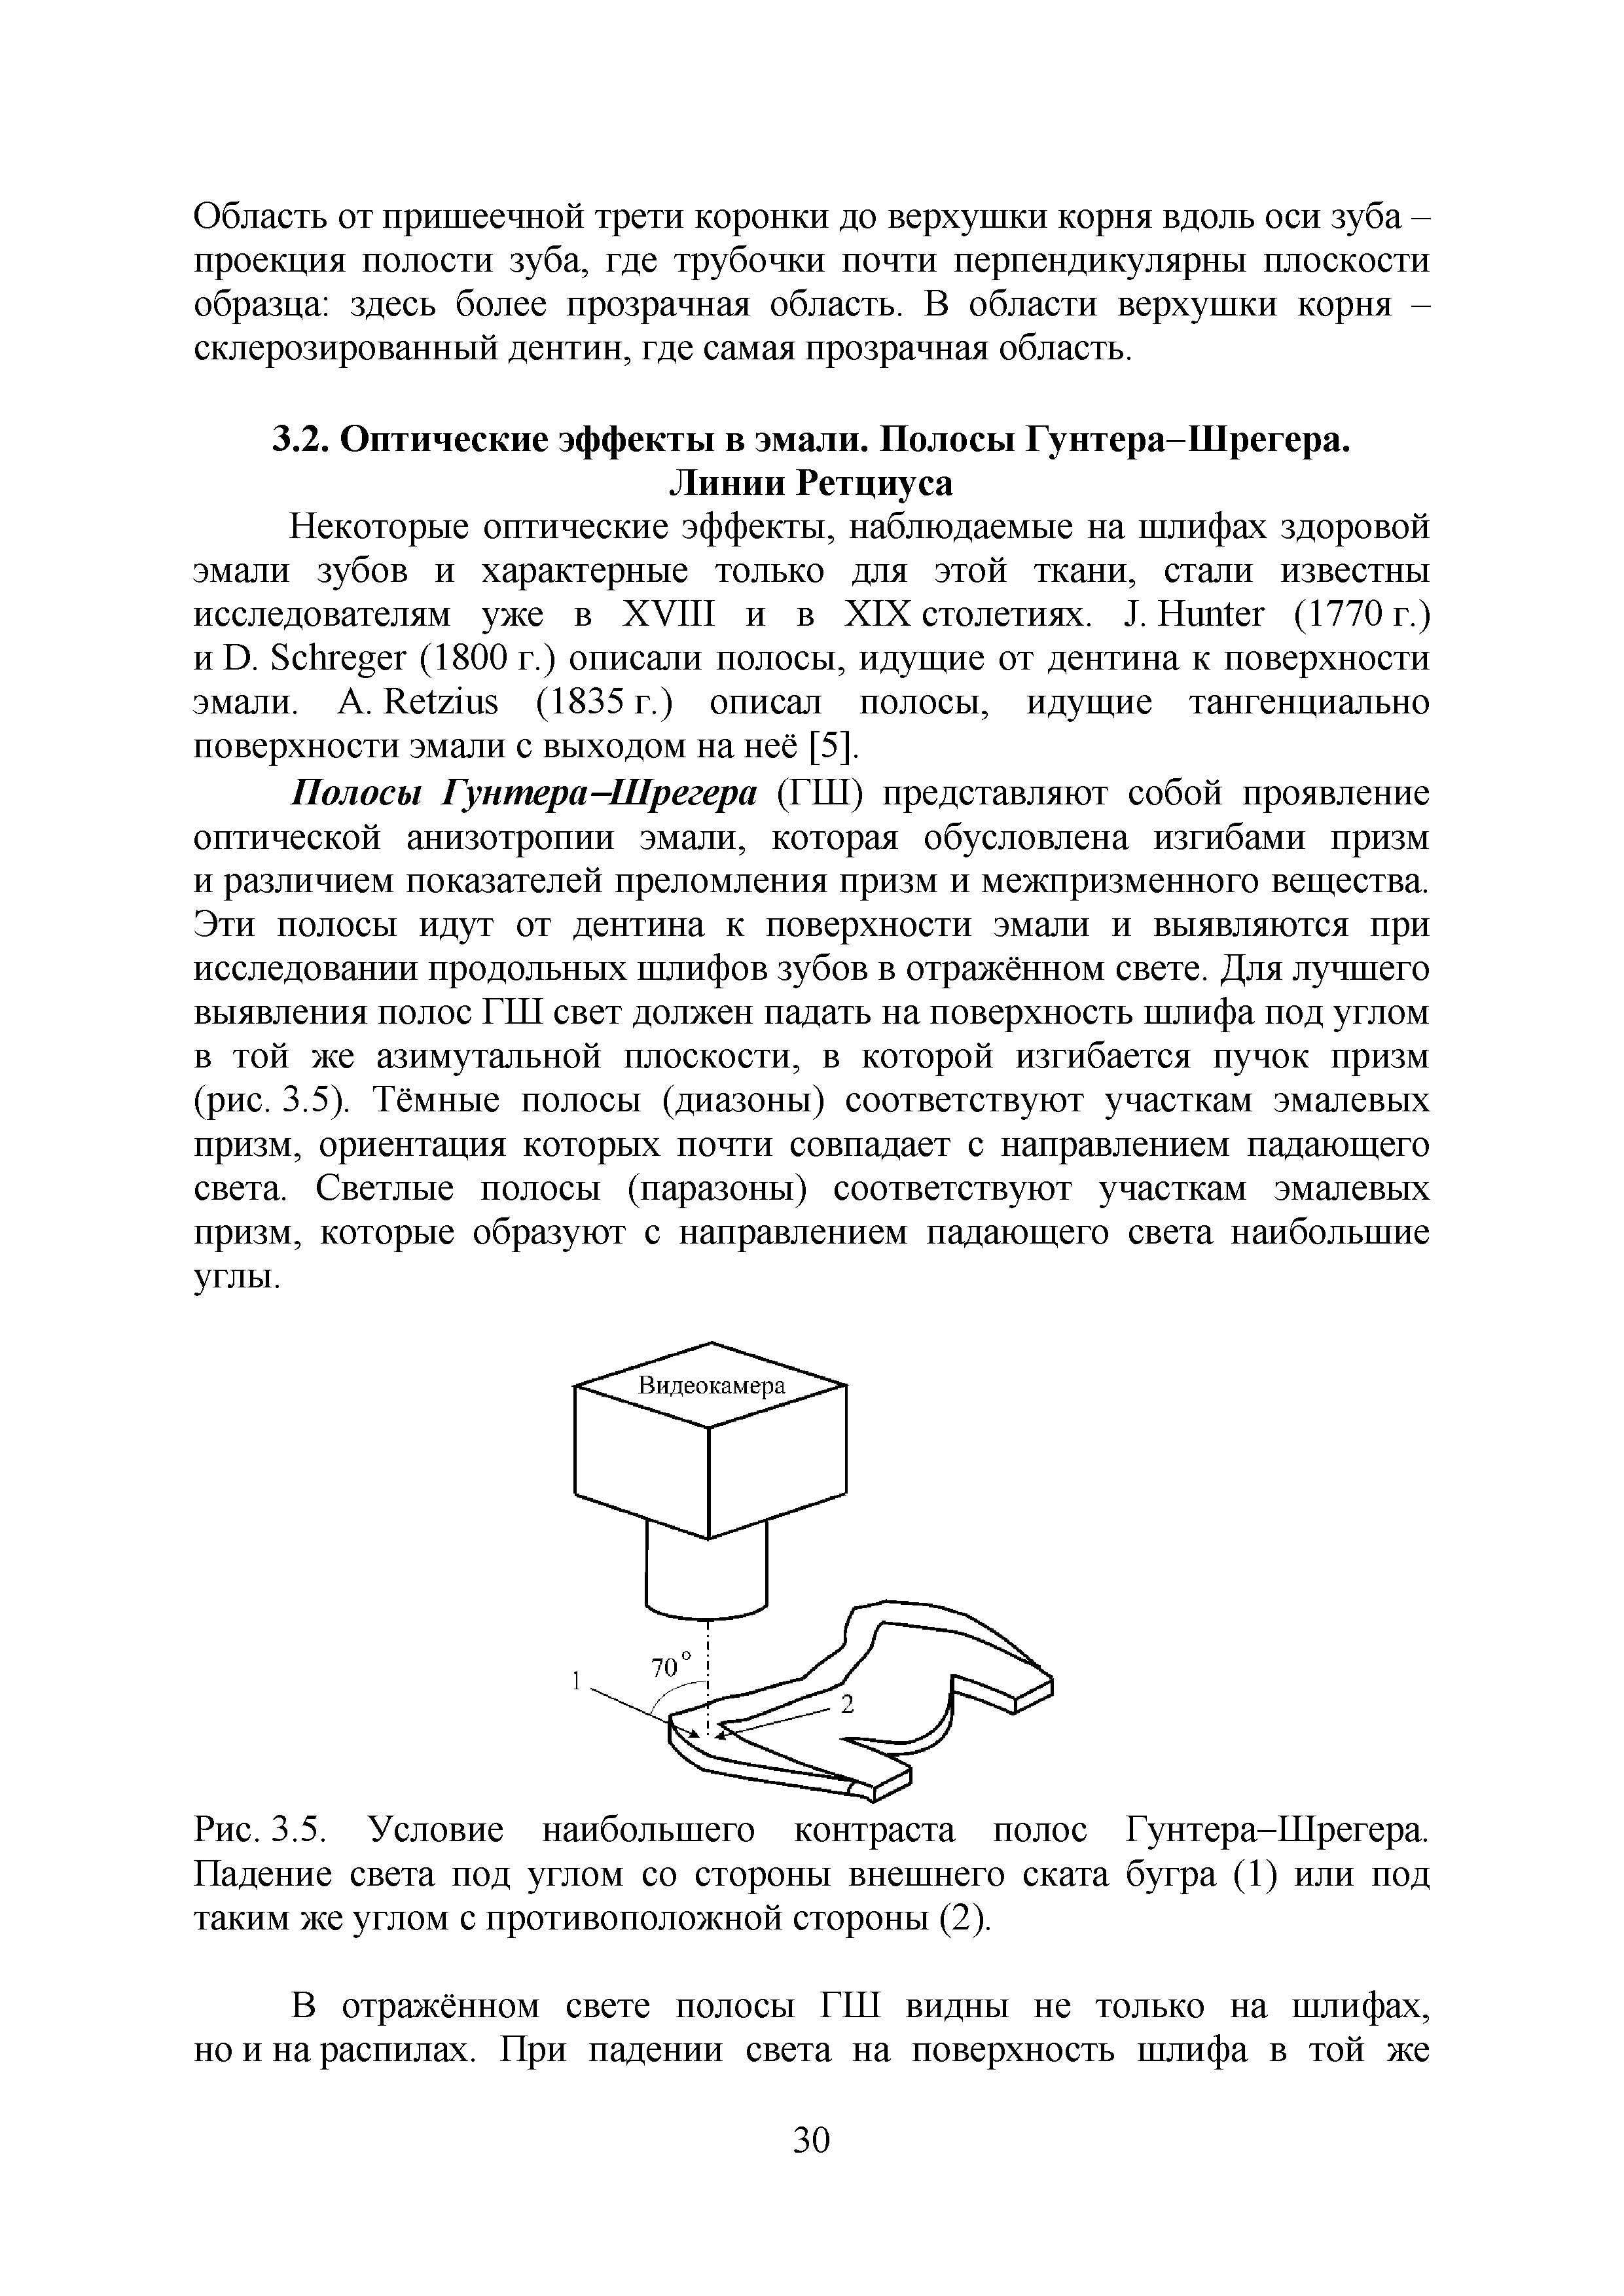 Рис. 3.5. Условие наибольшего контраста полос Гунтера-Шрегера. Падение света под углом со стороны внешнего ската бугра (1) или под таким же углом с противоположной стороны (2).